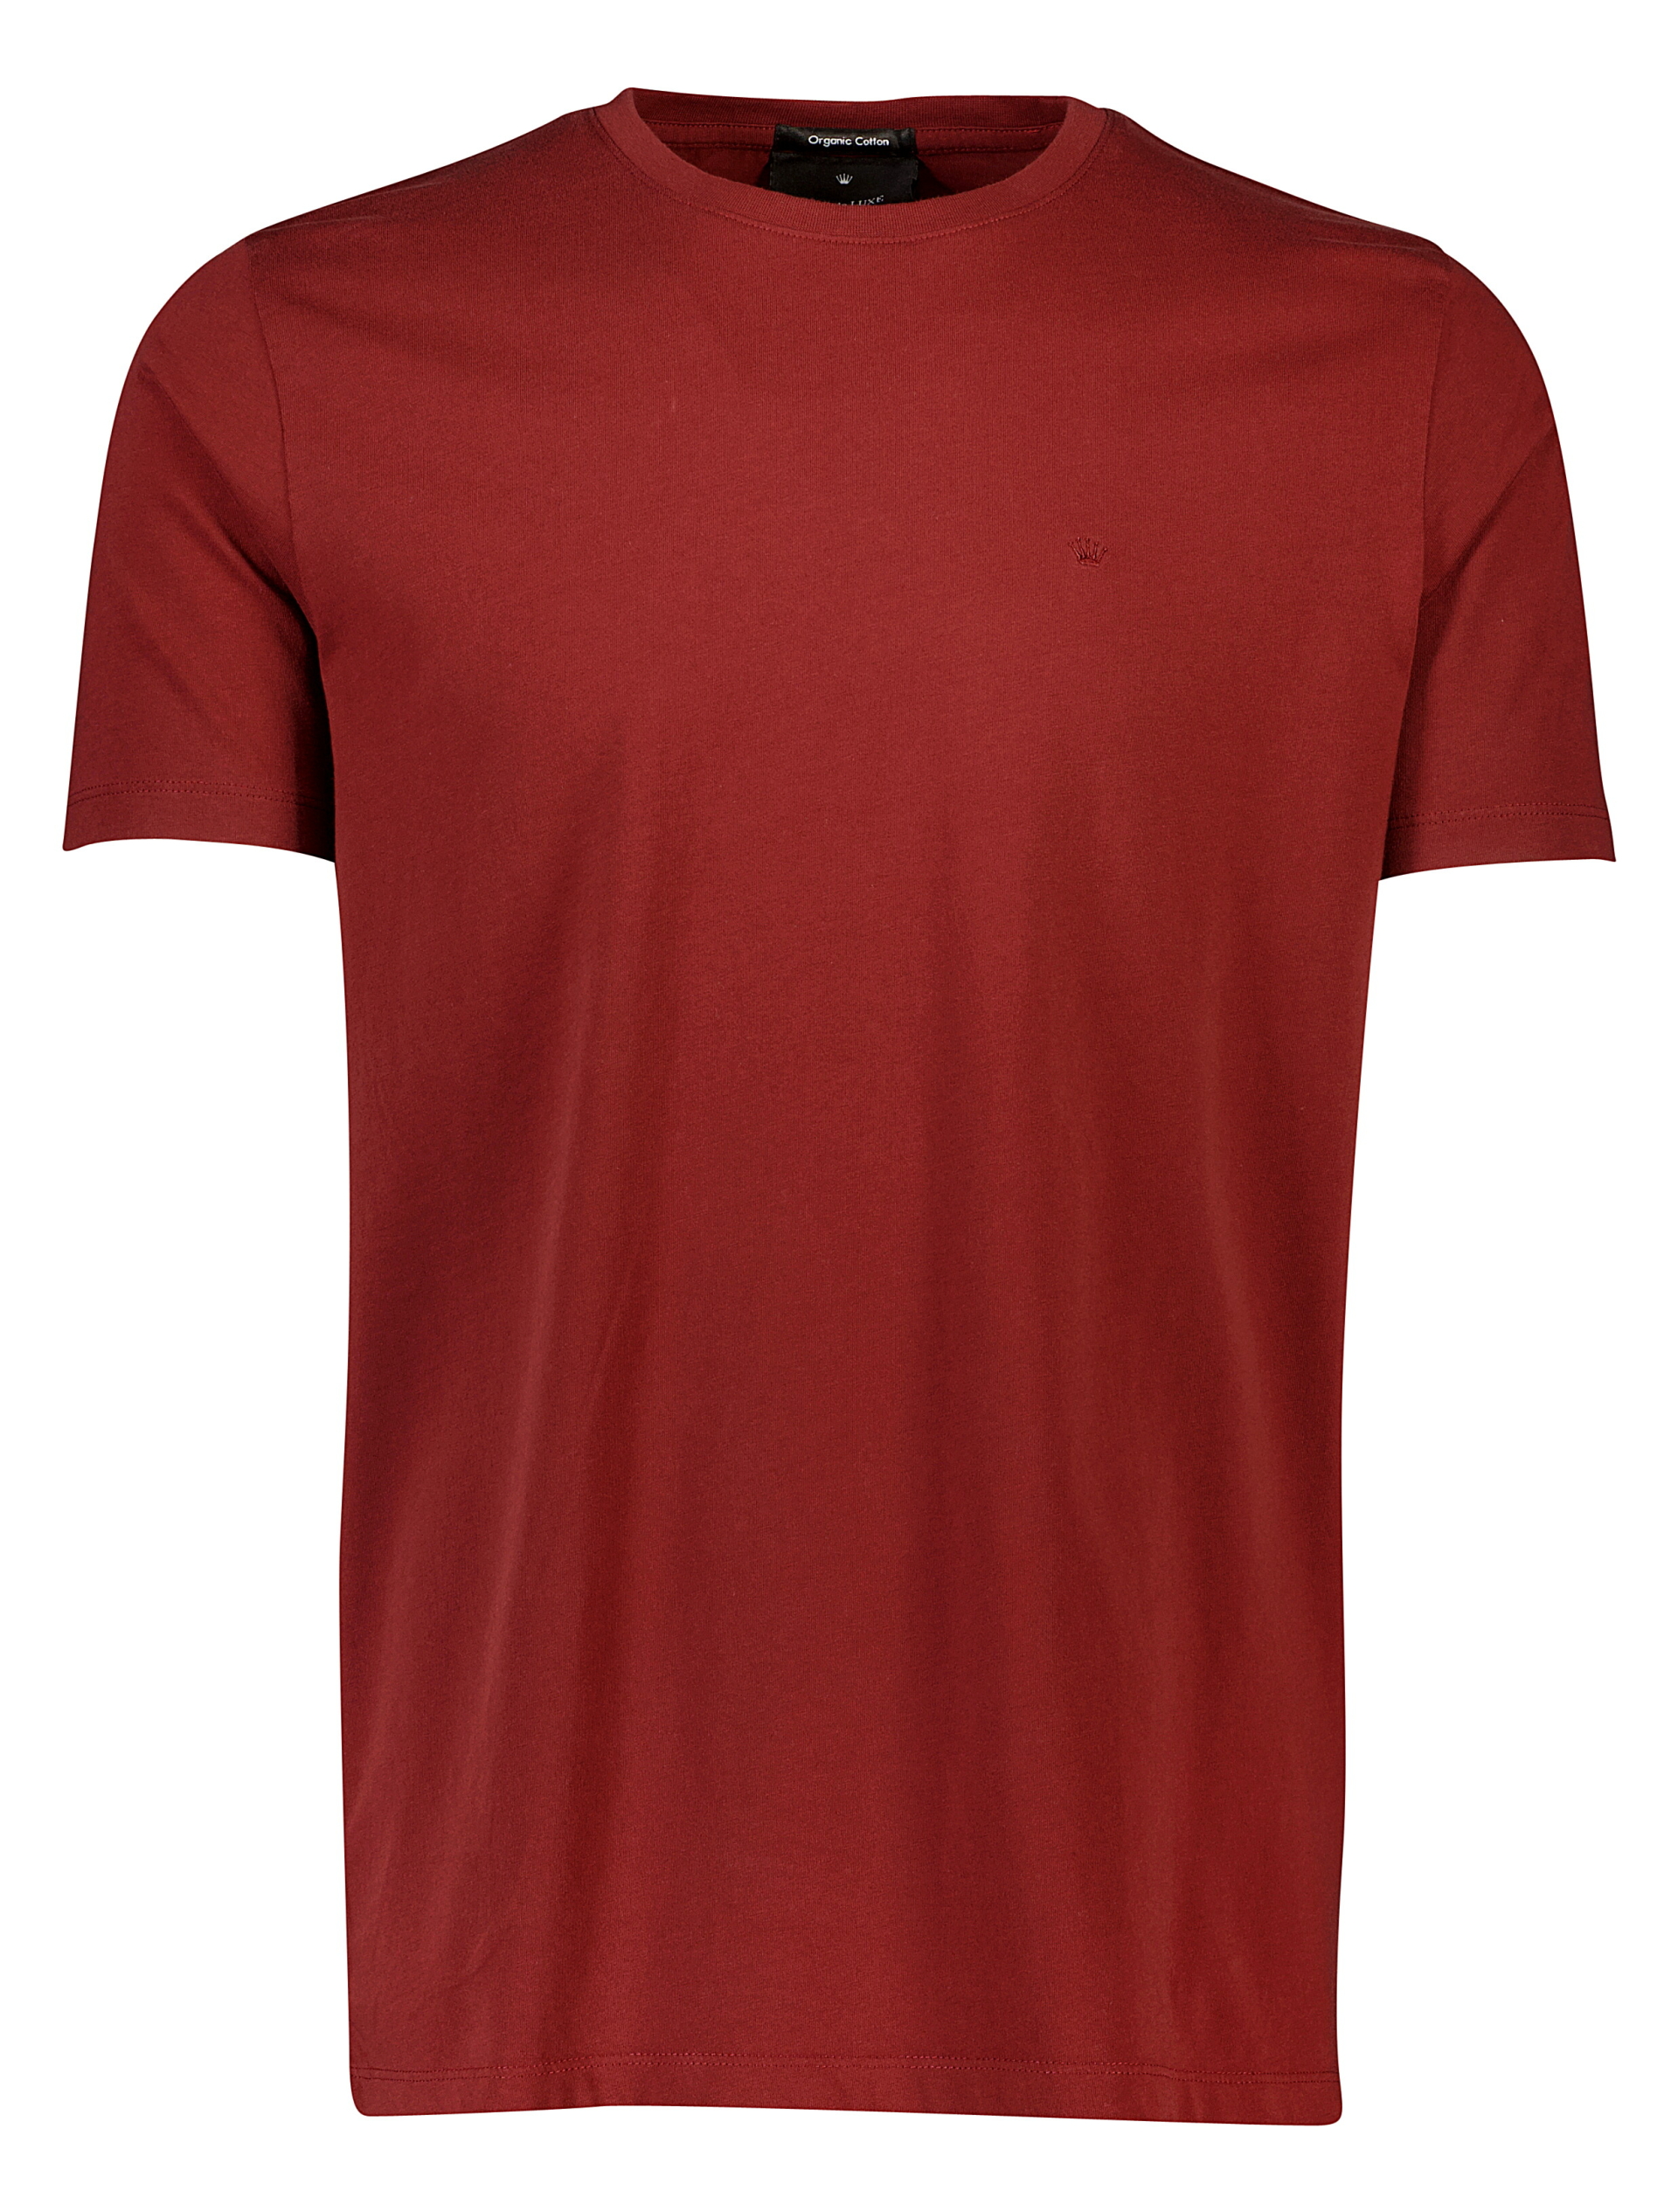 Junk de Luxe T-shirt röd / mid burgundy